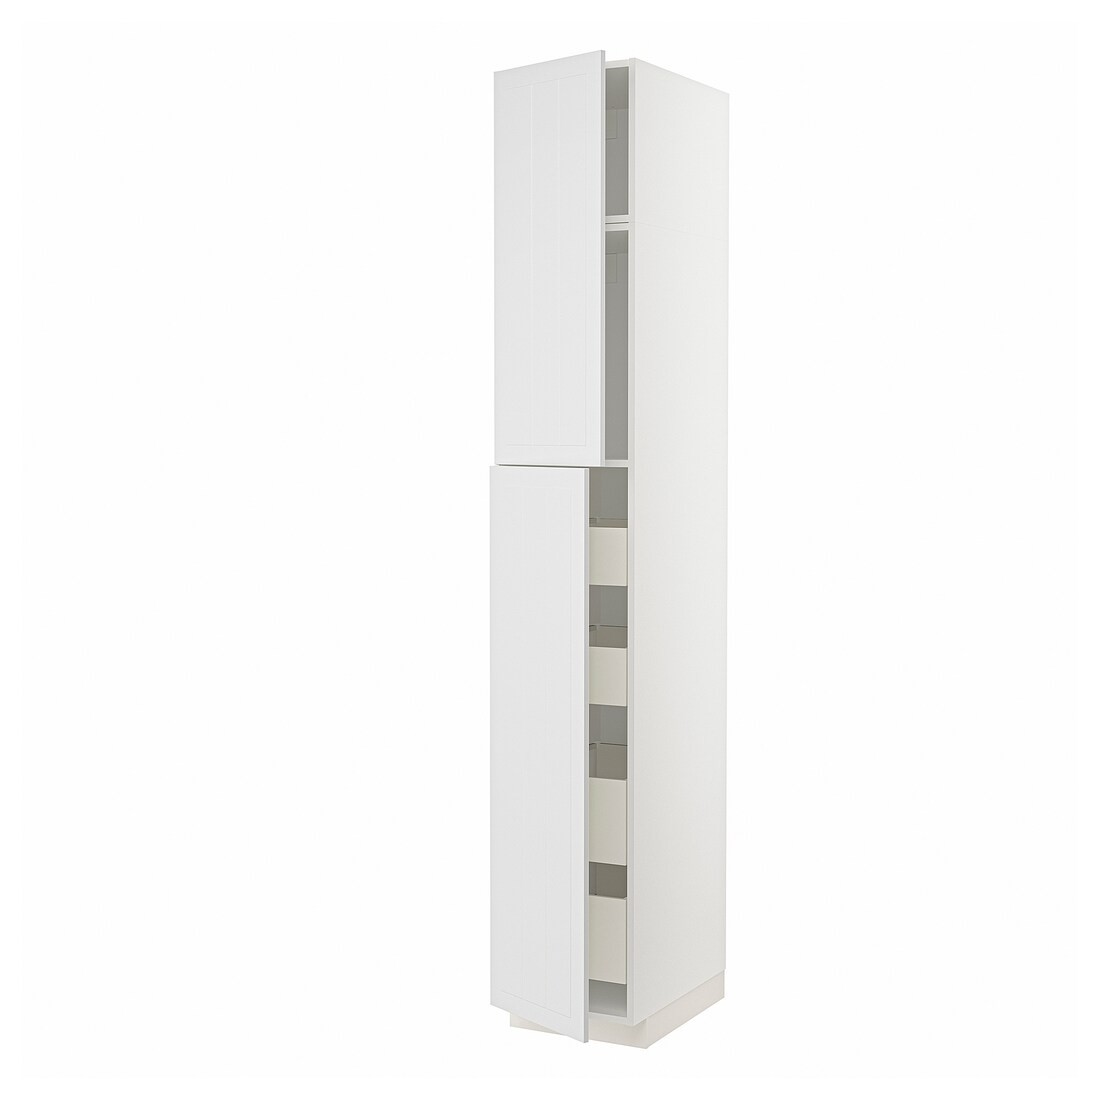 IKEA METOD МЕТОД / MAXIMERA МАКСІМЕРА Шафа висока 2 дверей / 4 шухляди, білий / Stensund білий, 40x60x240 см 79466048 794.660.48